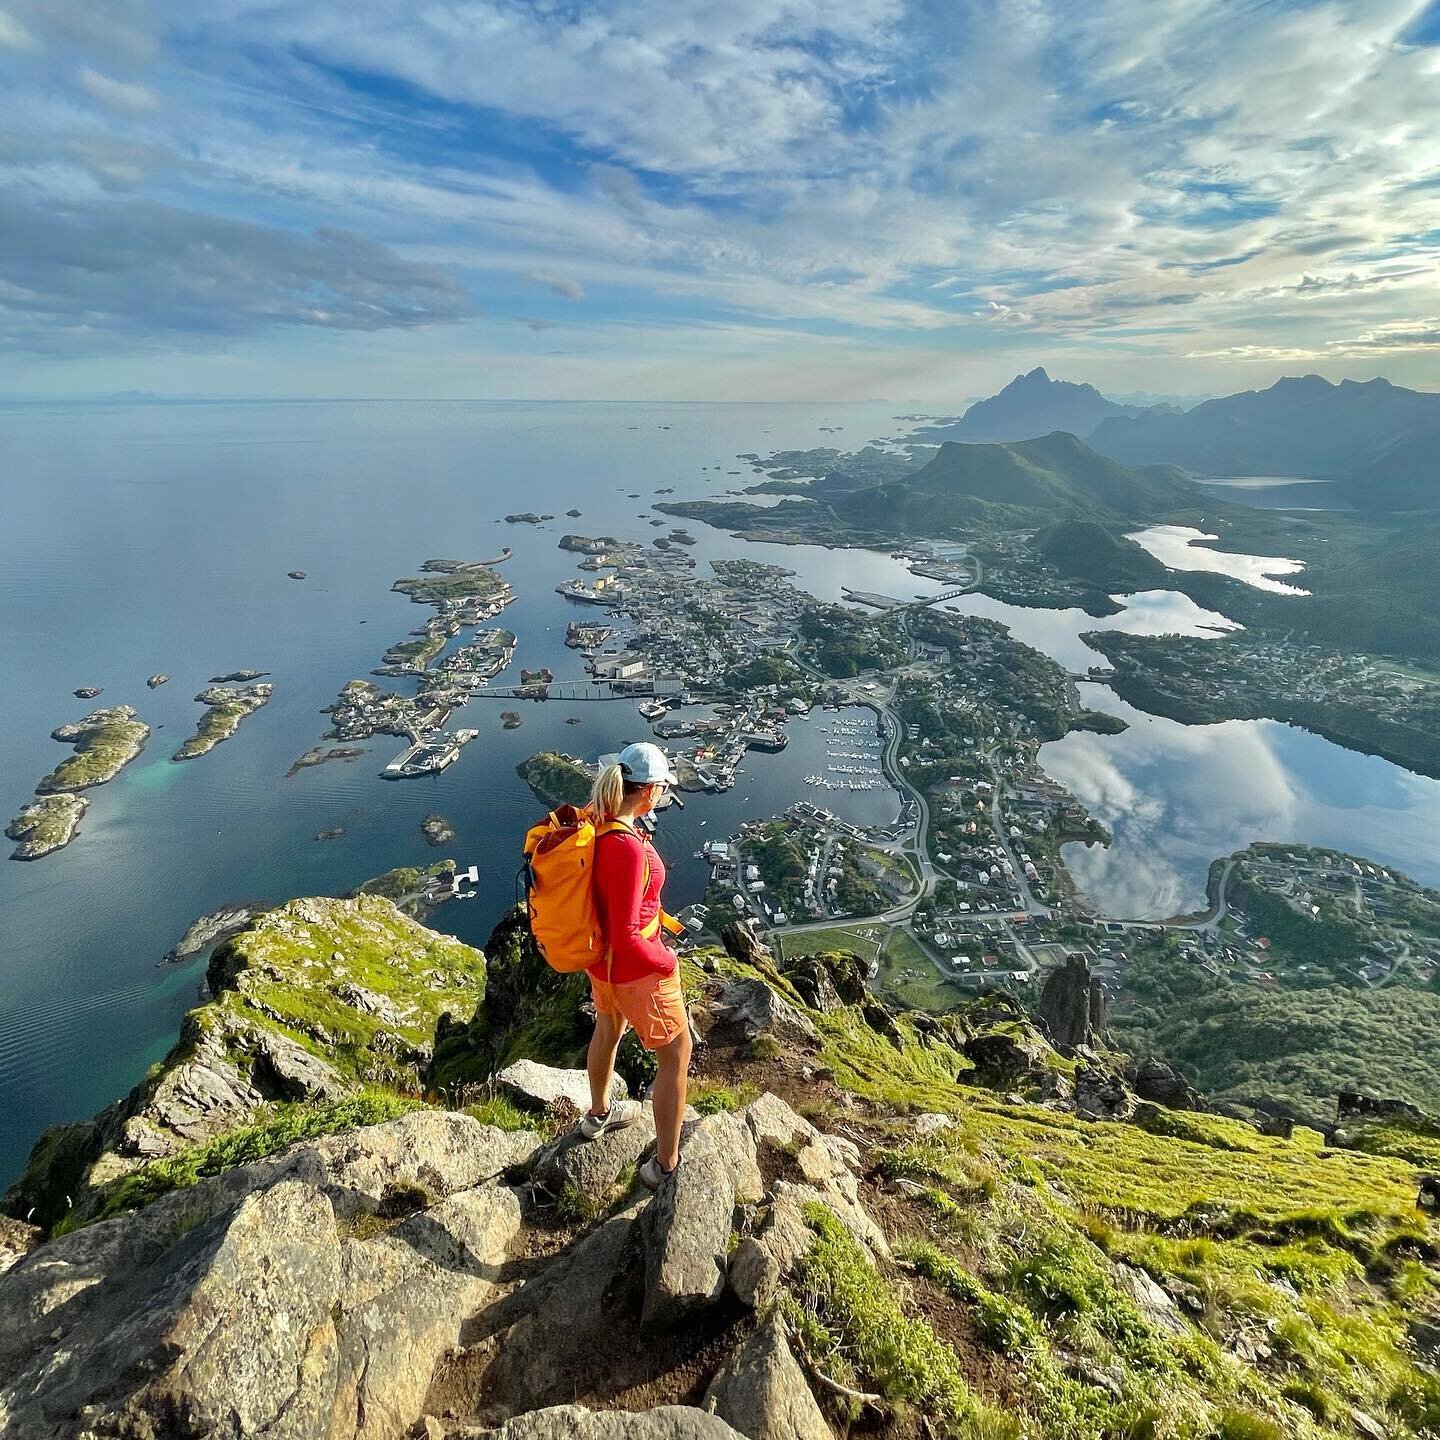 Svolv&aelig;r ✨
.
.
#svolv&aelig;r #svolv&aelig;rgeita #loffa #turistiegetland #lofotenp&aring;sittbeste #norge #visitlofoten #lofoten #visitlofoten #climbing #utno #deruteno #yrbilder #superlokal #kildentiletrikereliv #nordnorge #hikingadventures #h